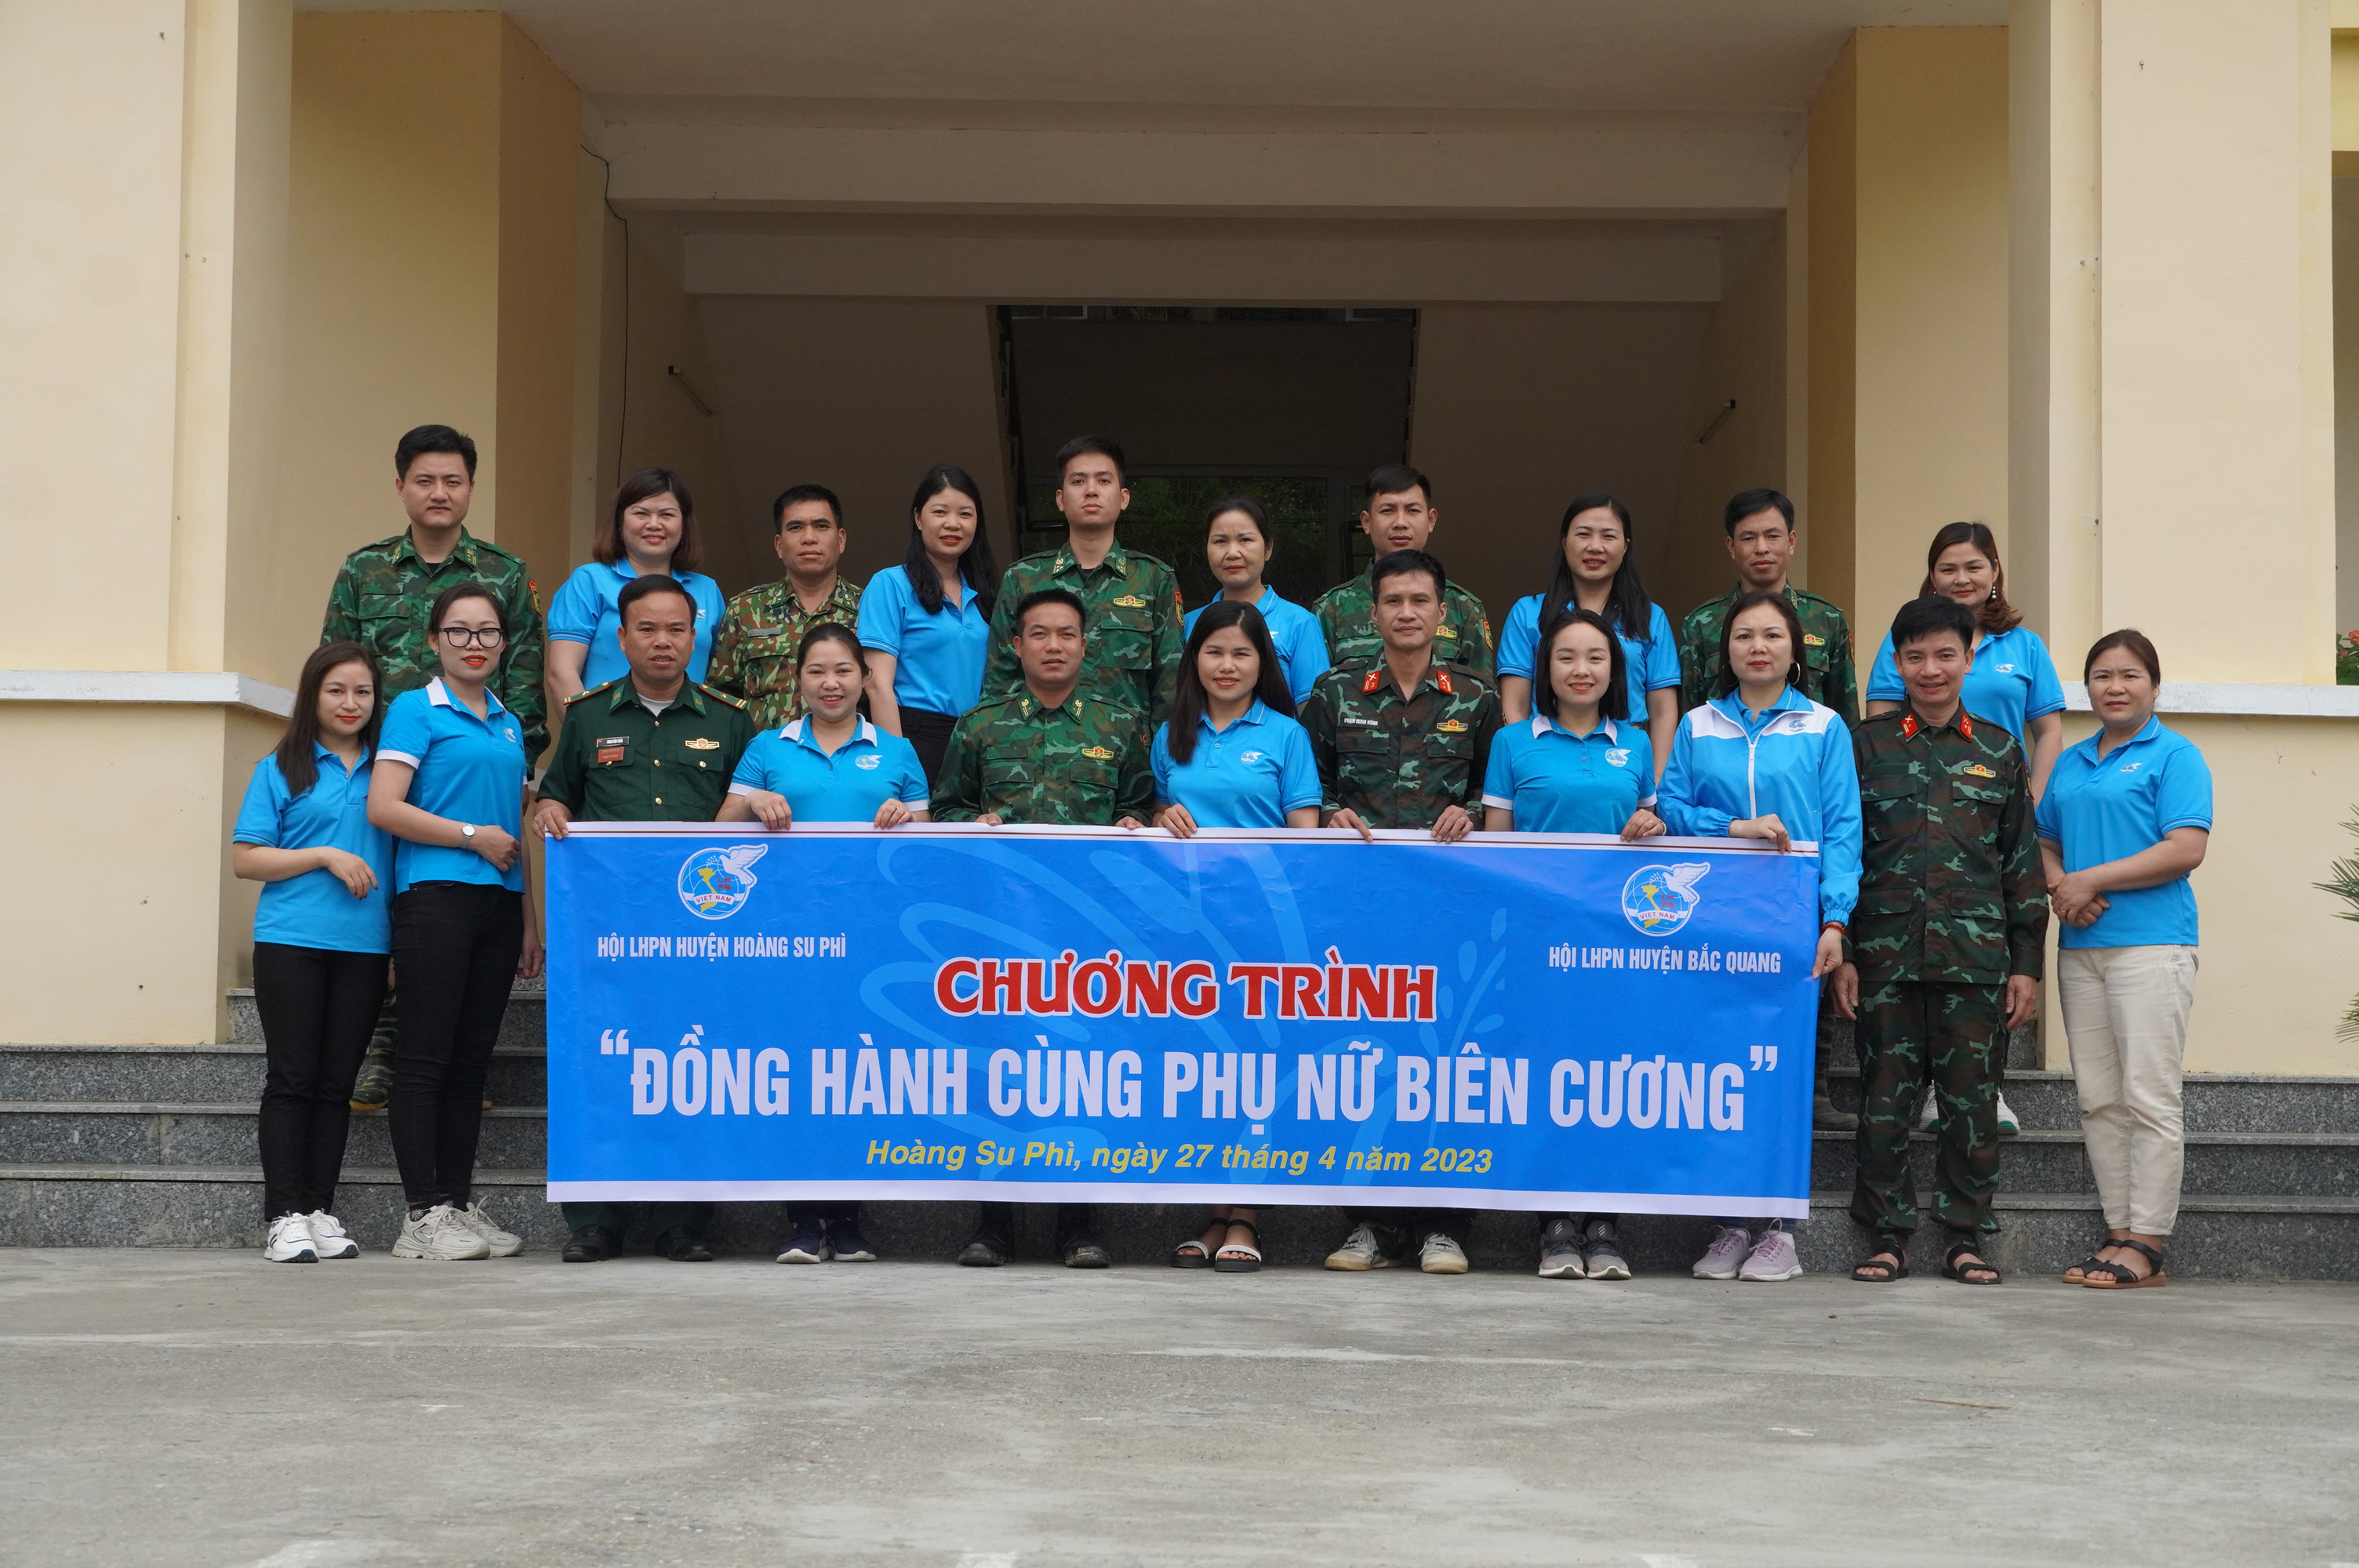 Hội LHPN huyện Hoàng Su Phì tổ chức chương trình “Đồng hành cùng phụ nữ biên cương” năm 2023